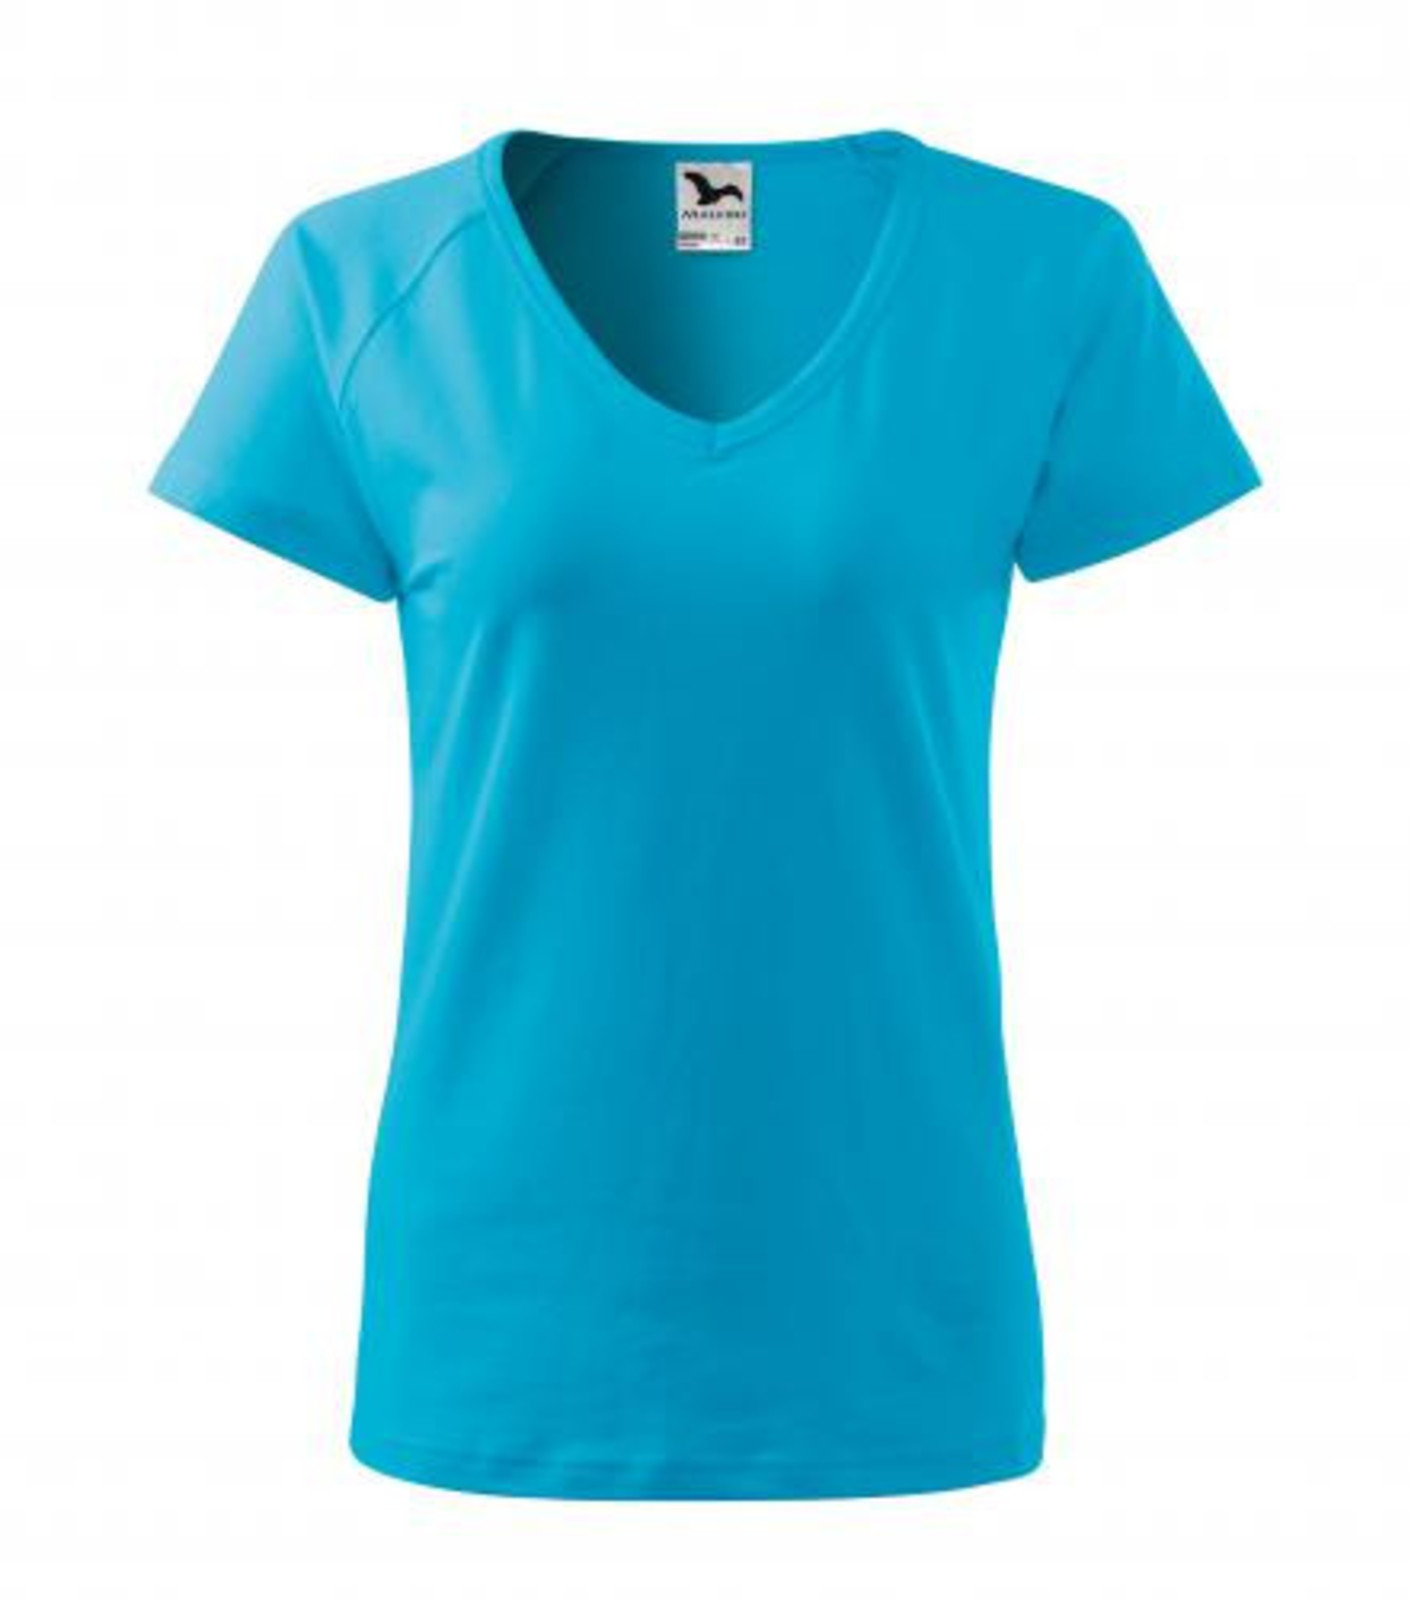 Dámske tričko s V výstrihom Adler Dream 128 - veľkosť: M, farba: tyrkysová